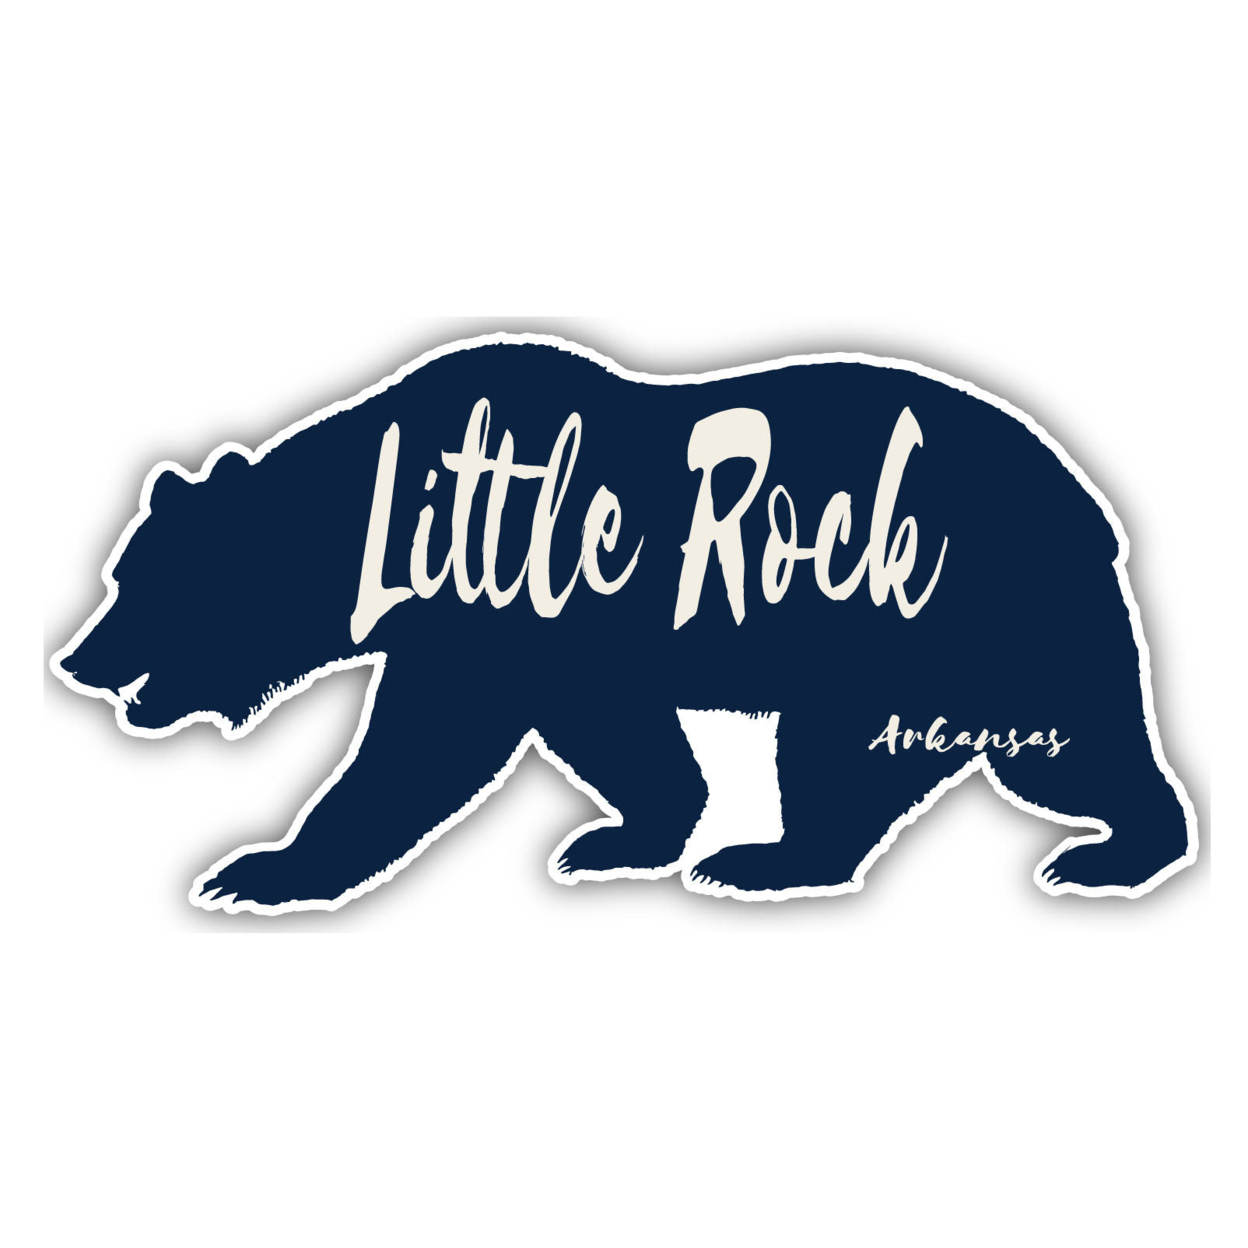 Little Rock Arkansas Souvenir Decorative Stickers (Choose Theme And Size) - 2-Inch, Tent